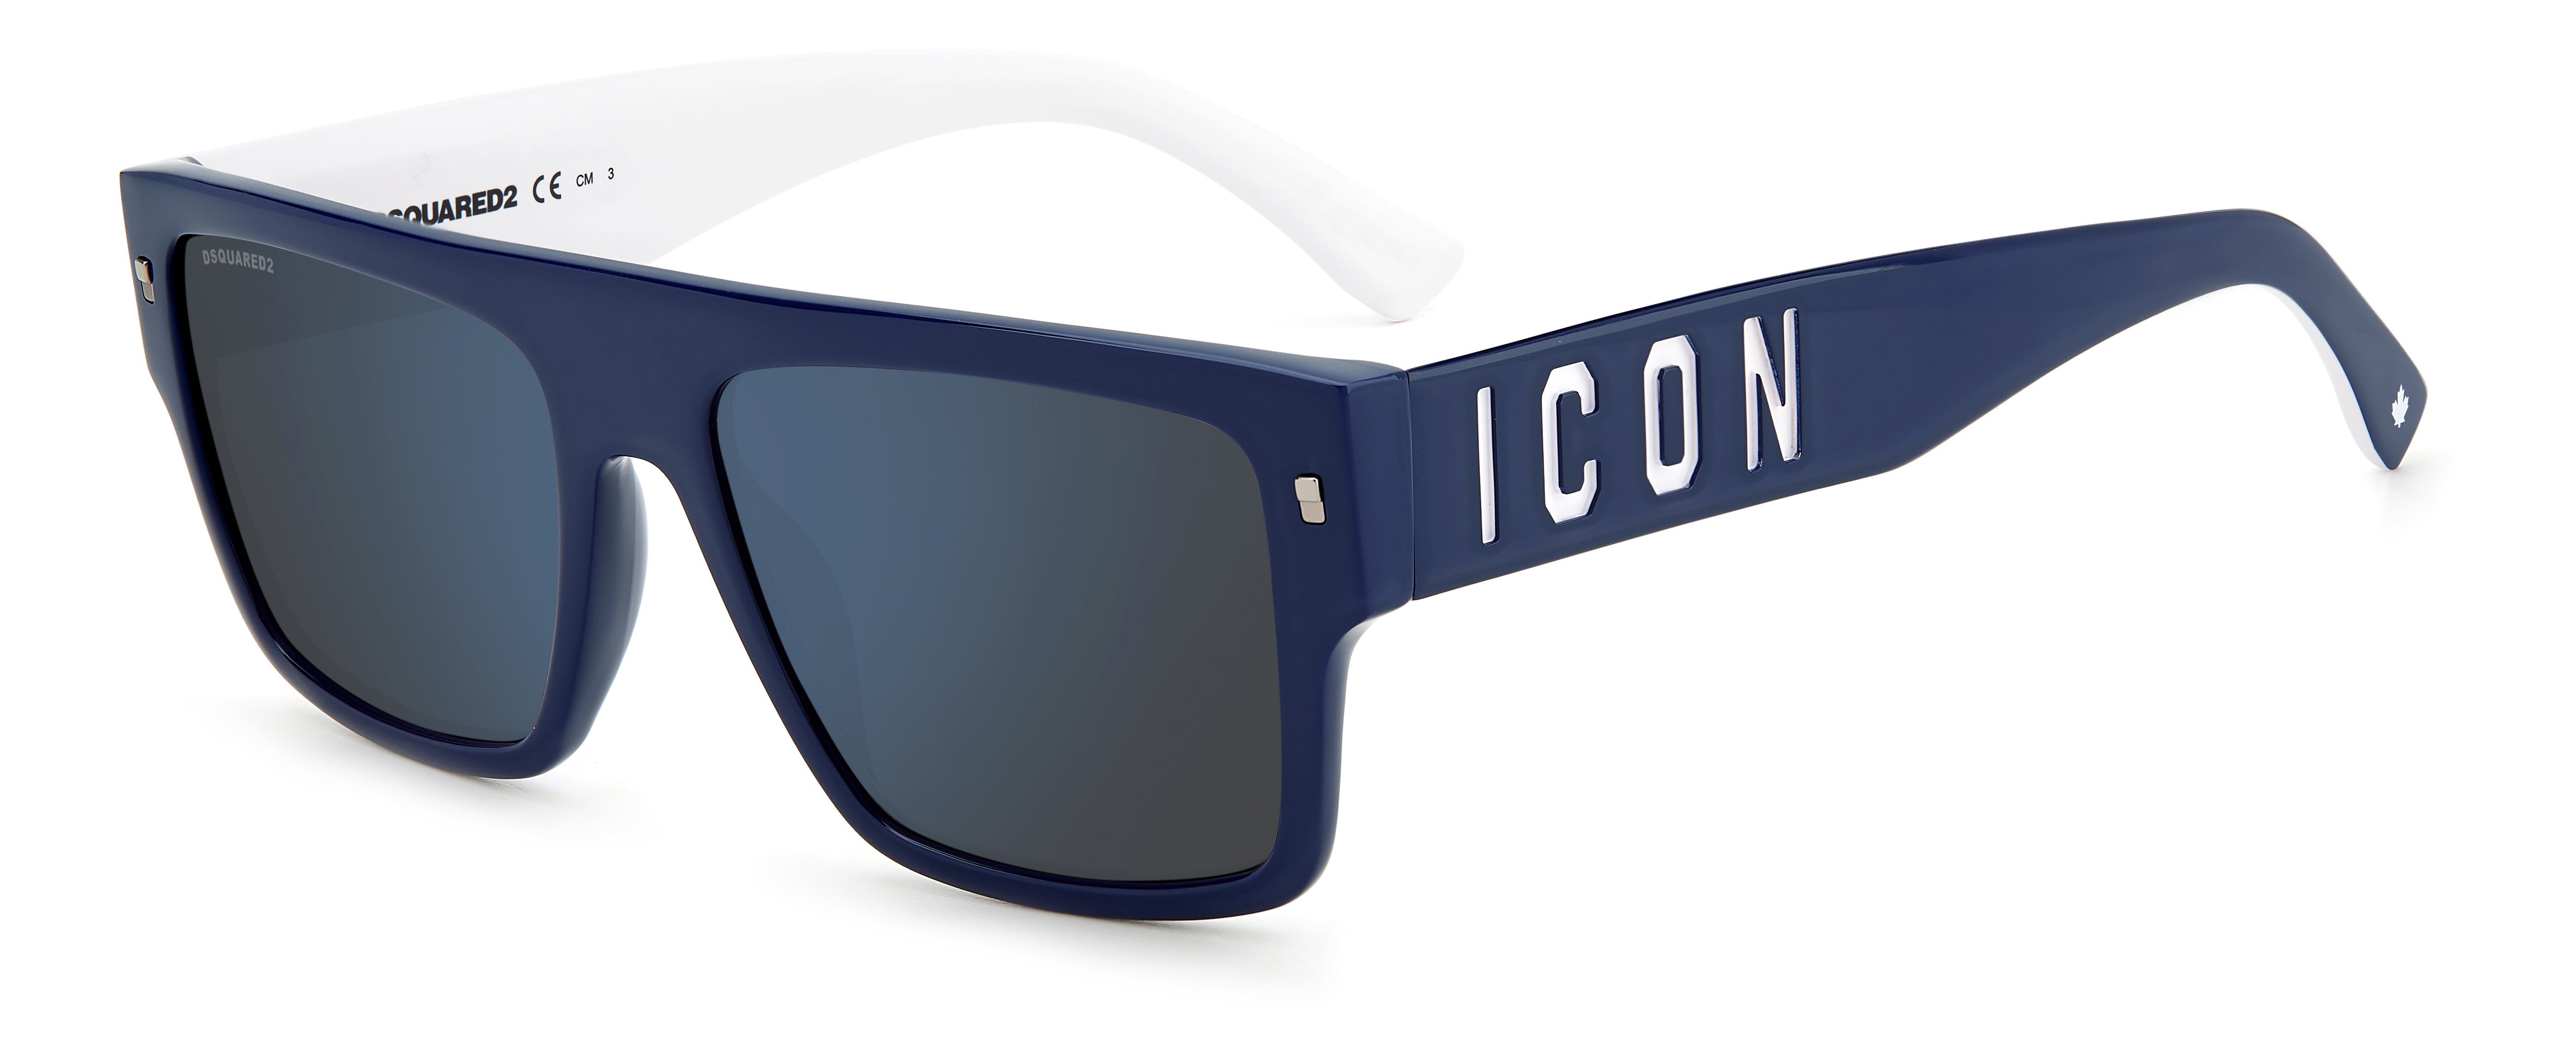 Dsquared2 ICON Rectangular Sunglasses